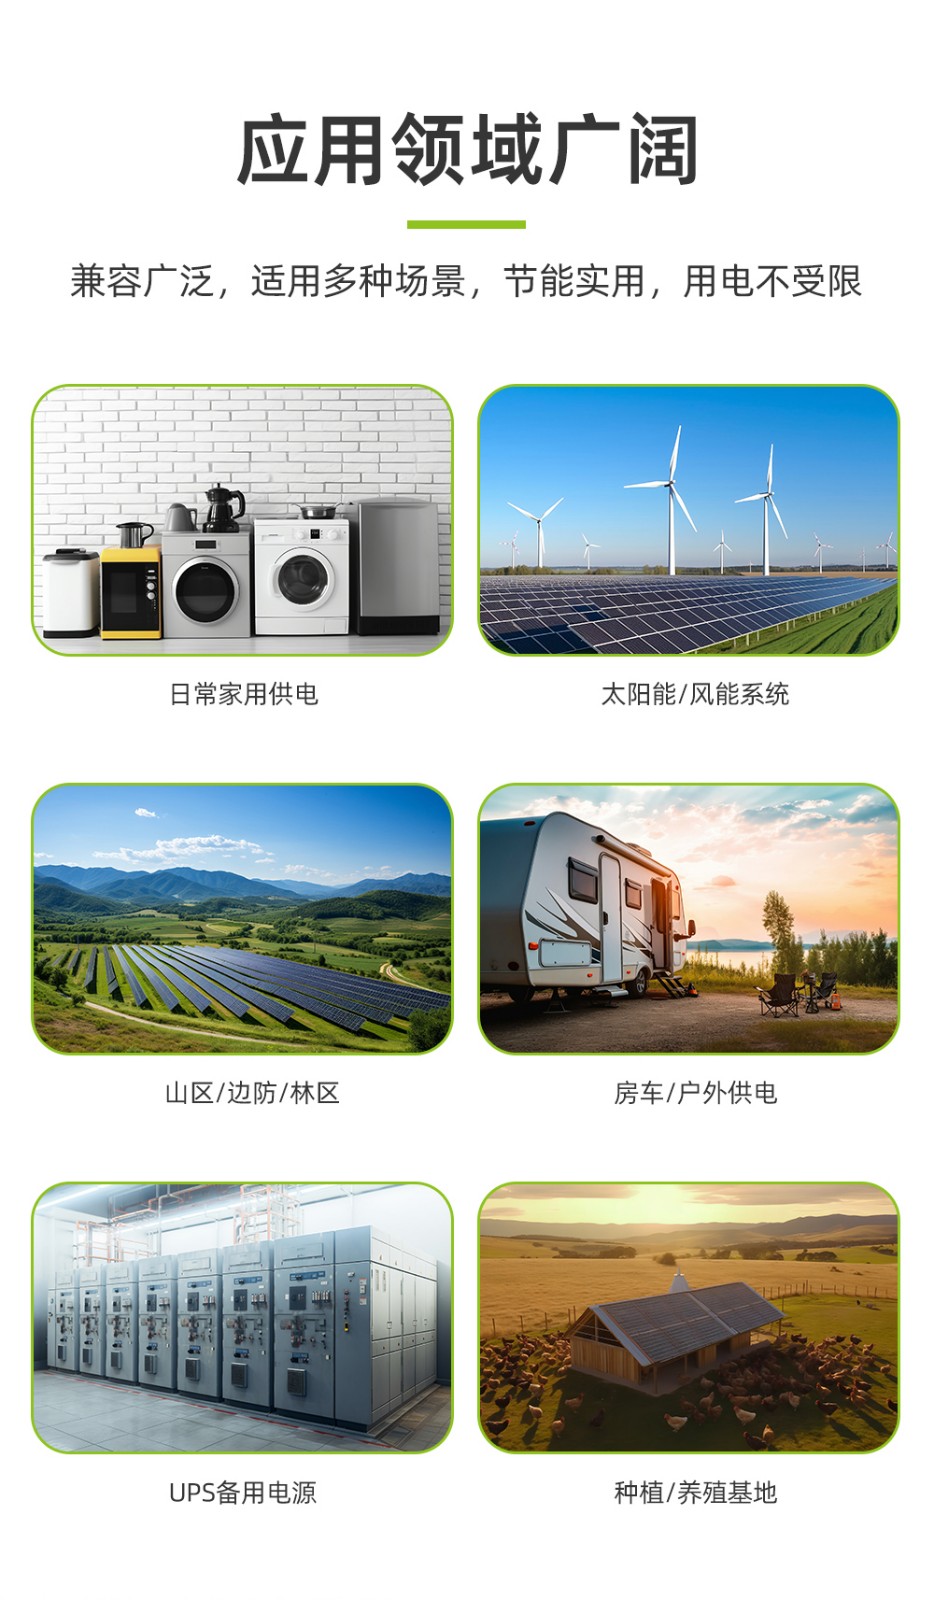 新葡萄新京B500-2 10度电太阳能家庭储能电源_06